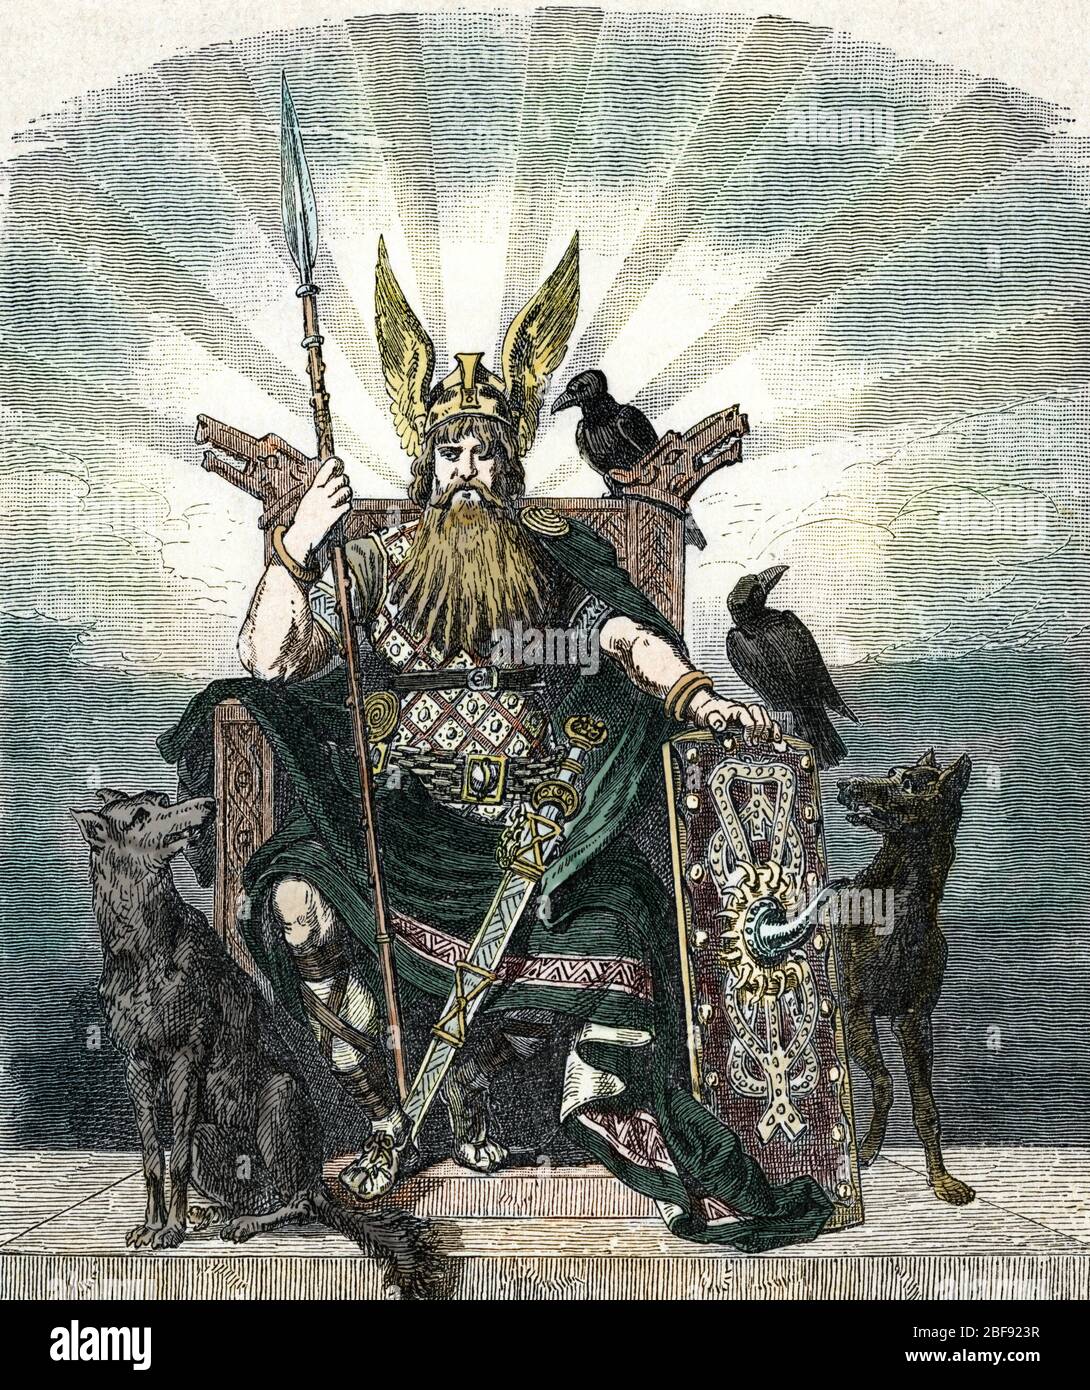 Mythologie nordique : Odin (nordische Mythologie : Odin) Gravure tiree de 'Nordisch-deutsche Gotter und Helden' de Wilhelm wagner 1901 Collection privee Stockfoto